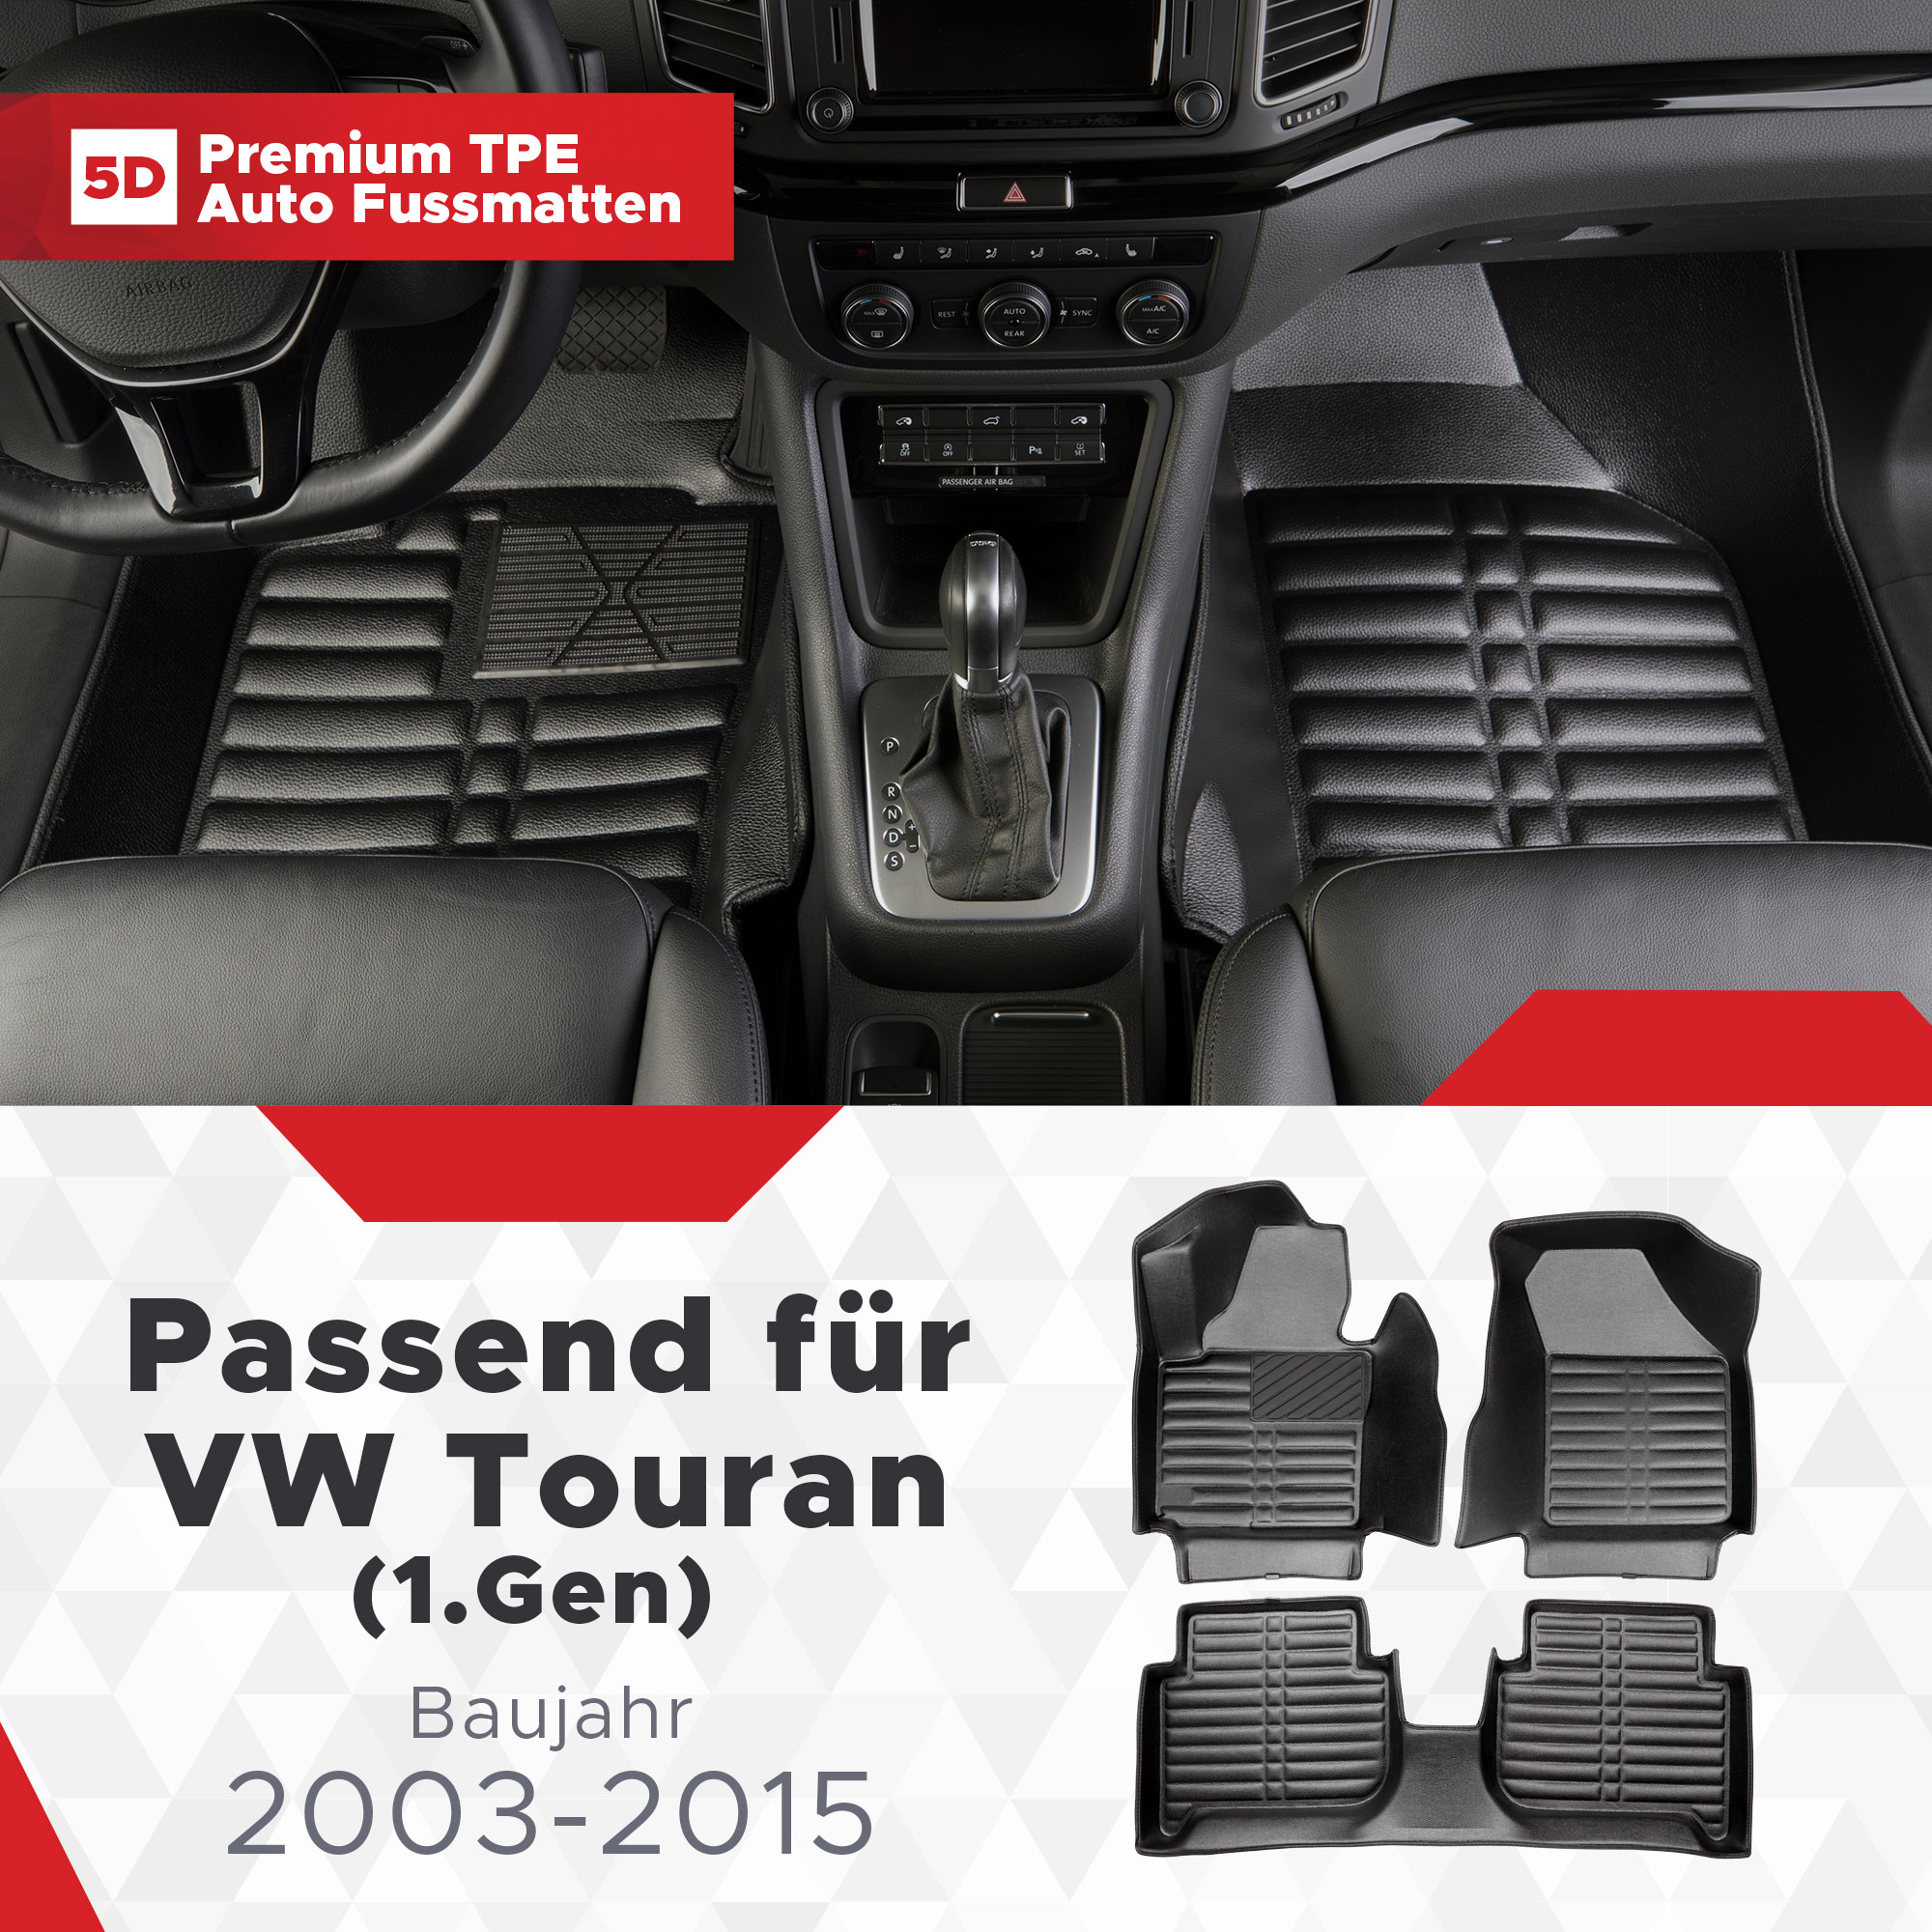 TPE Fussmatten 2003-2015 Touran Bj 5D VW (1.Gen)